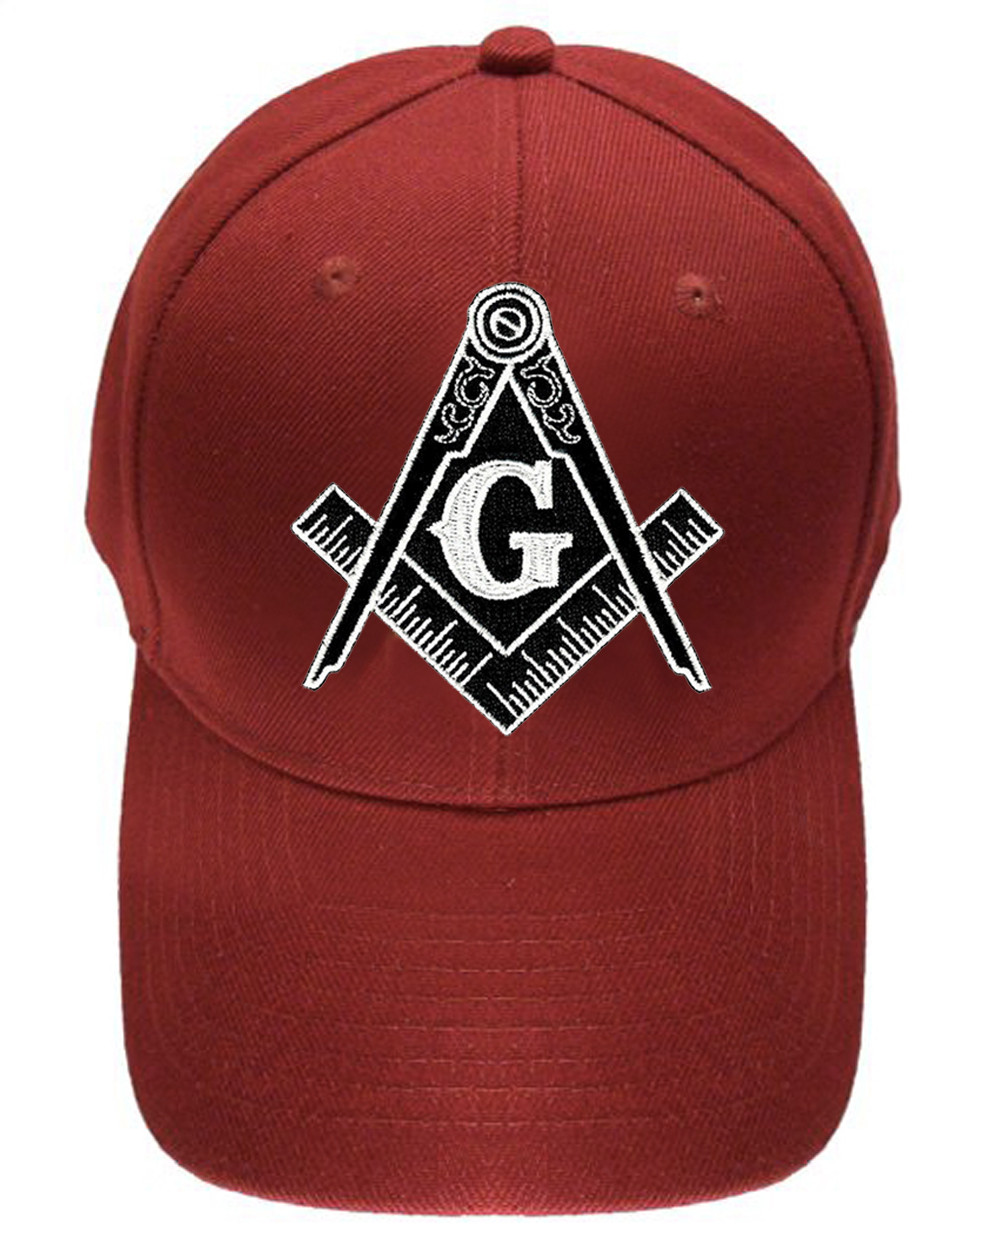 Freemason's Baseball Cap - Red Hat with Black and White Standard Masonic  Symbol - One Size Fits Most Adults. Masonic Gifts - Mason Zone